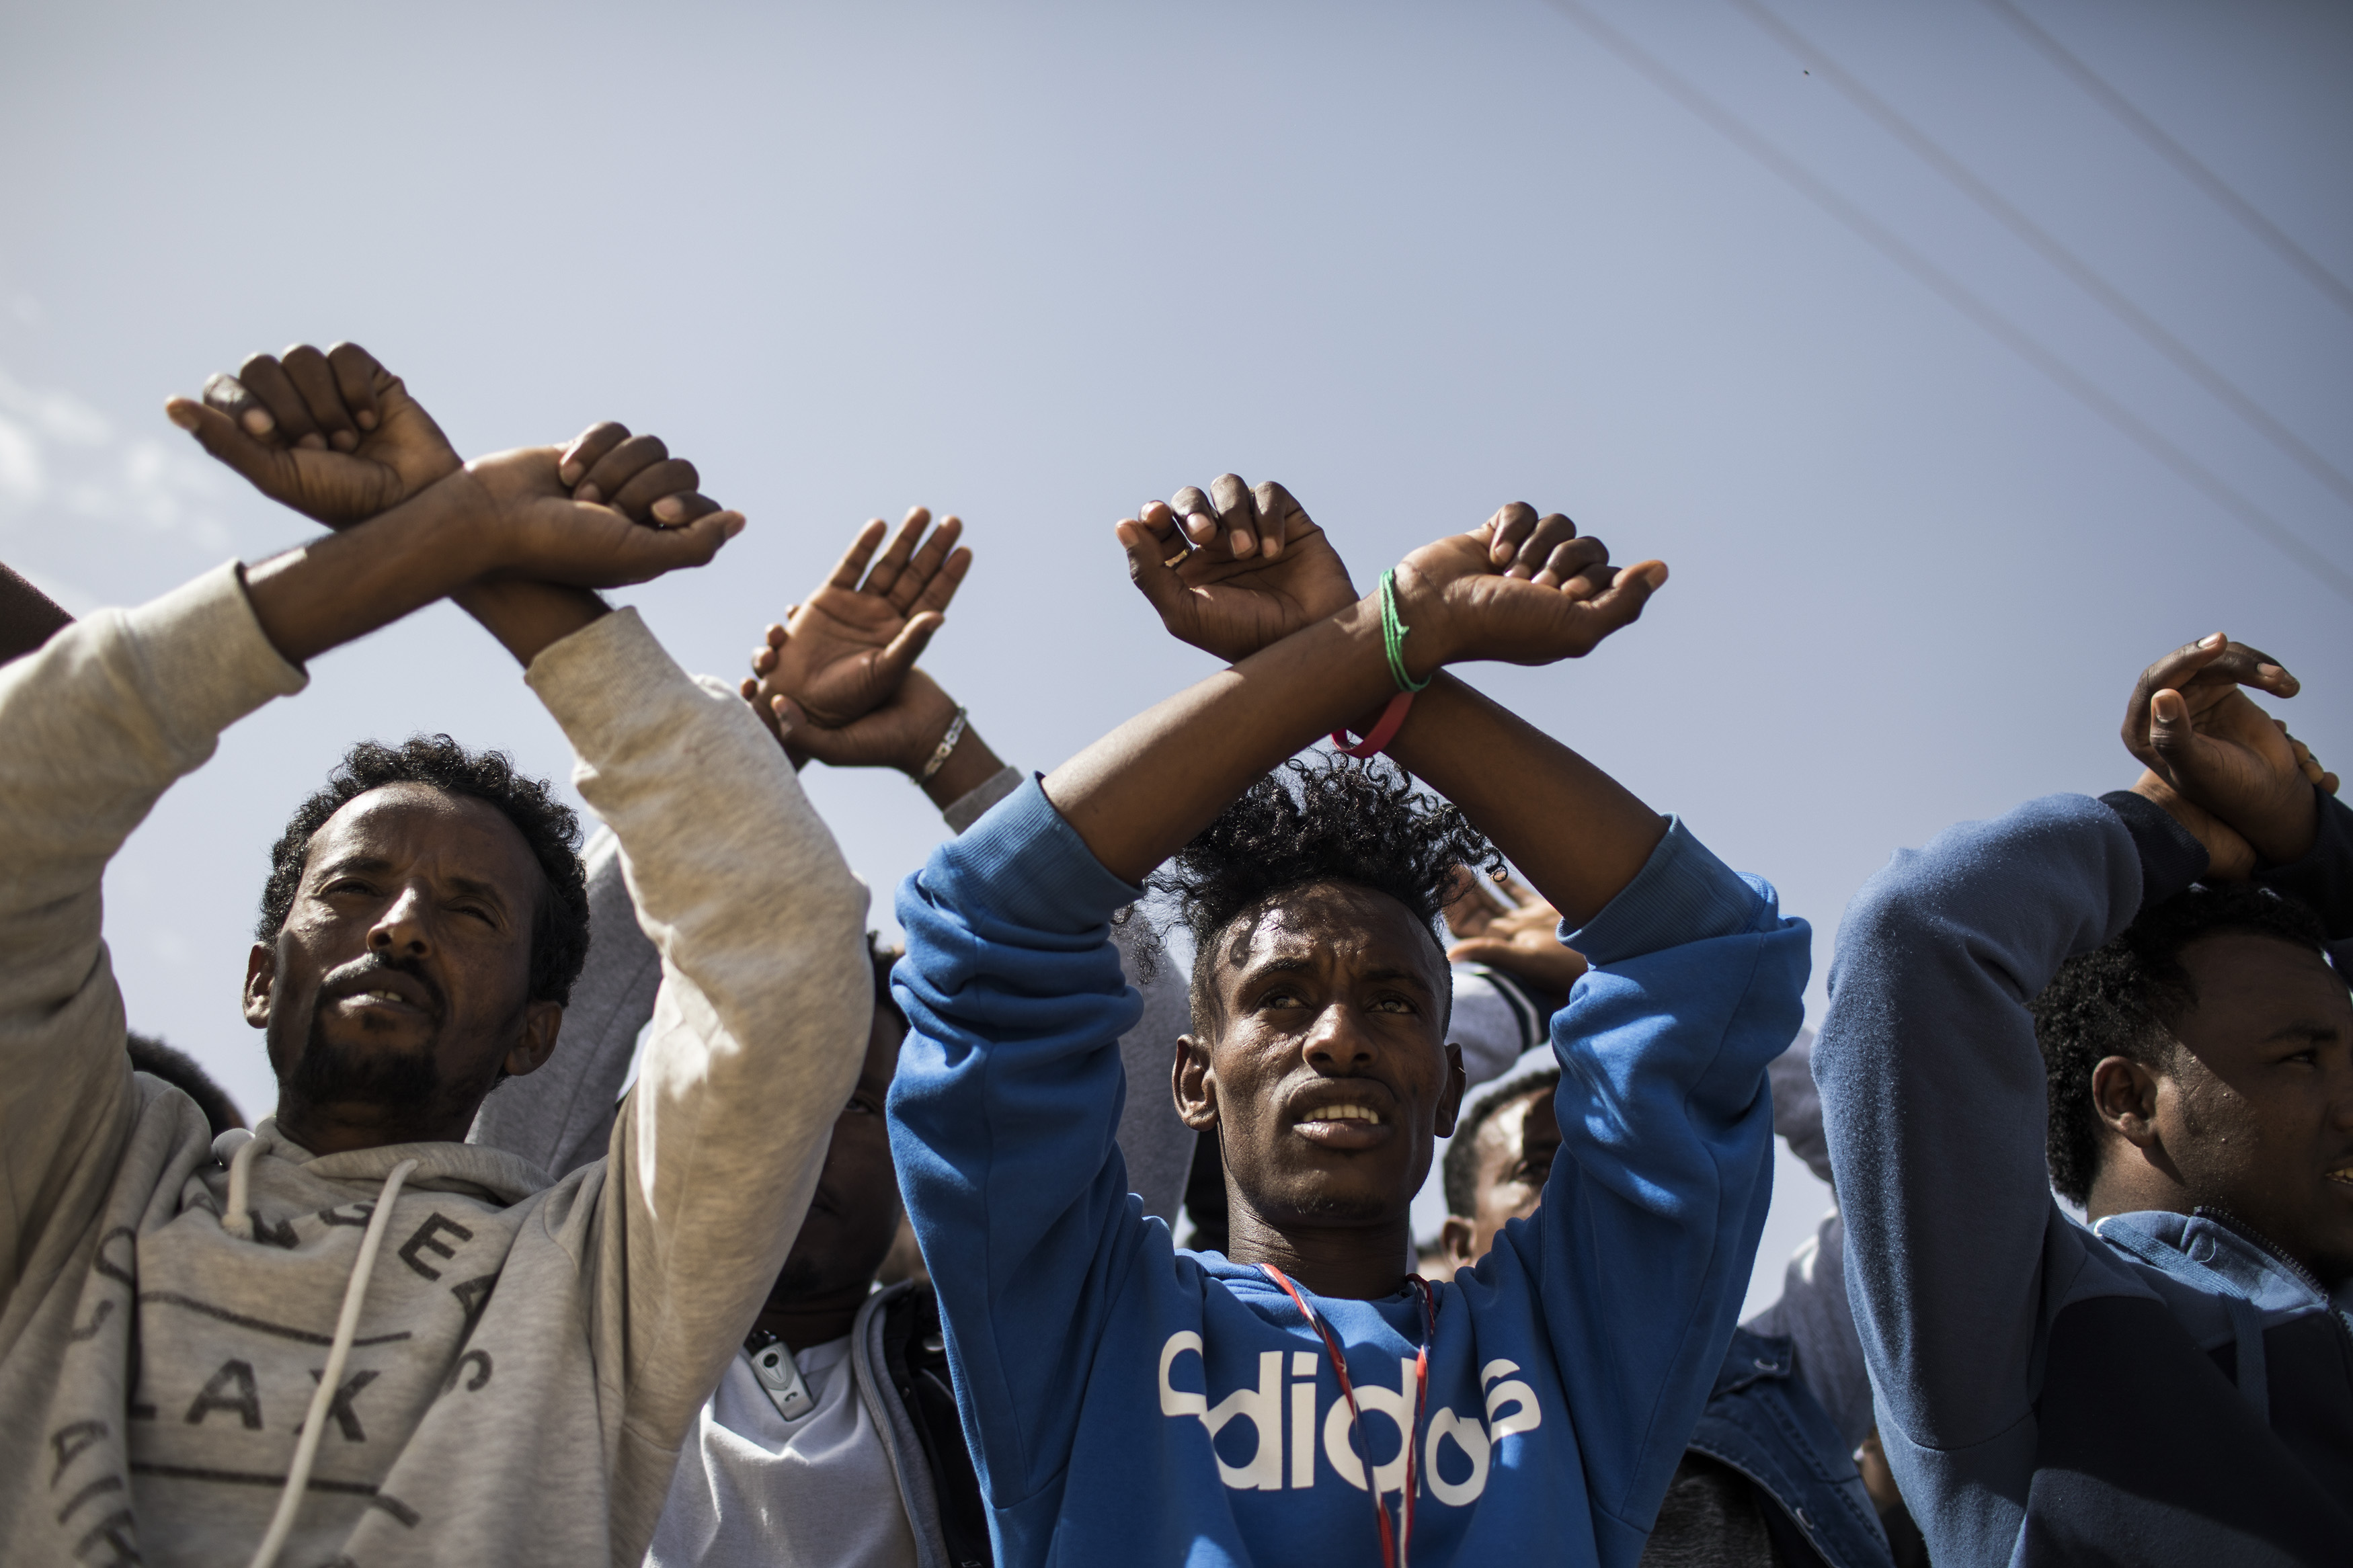 22.02.2018, Israel, Saharonim Gefängnis:  Asybewerber aus Eritrea halten ihre Hände wie in Handschellen vor dem Gefängnis Saharonim in der Wüste Negev um gegen Regierungspläne zu protestieren, Afrikaner zwangsweise abzuschieben. Israel betrachtet die vor allem aus Eritrea und dem Sudan stammenden Flüchtlinge als illegale Einwanderer. Asylanträgen wird nur in extrem seltenen Fällen stattgegeben. Nach Medienberichten hat Israel eine Vereinbarung mit Ruanda und Uganda getroffen, dafür gibt es aber keine Bestätigung. Photo by: ilia yefimovich/picture-alliance/dpa/AP Images